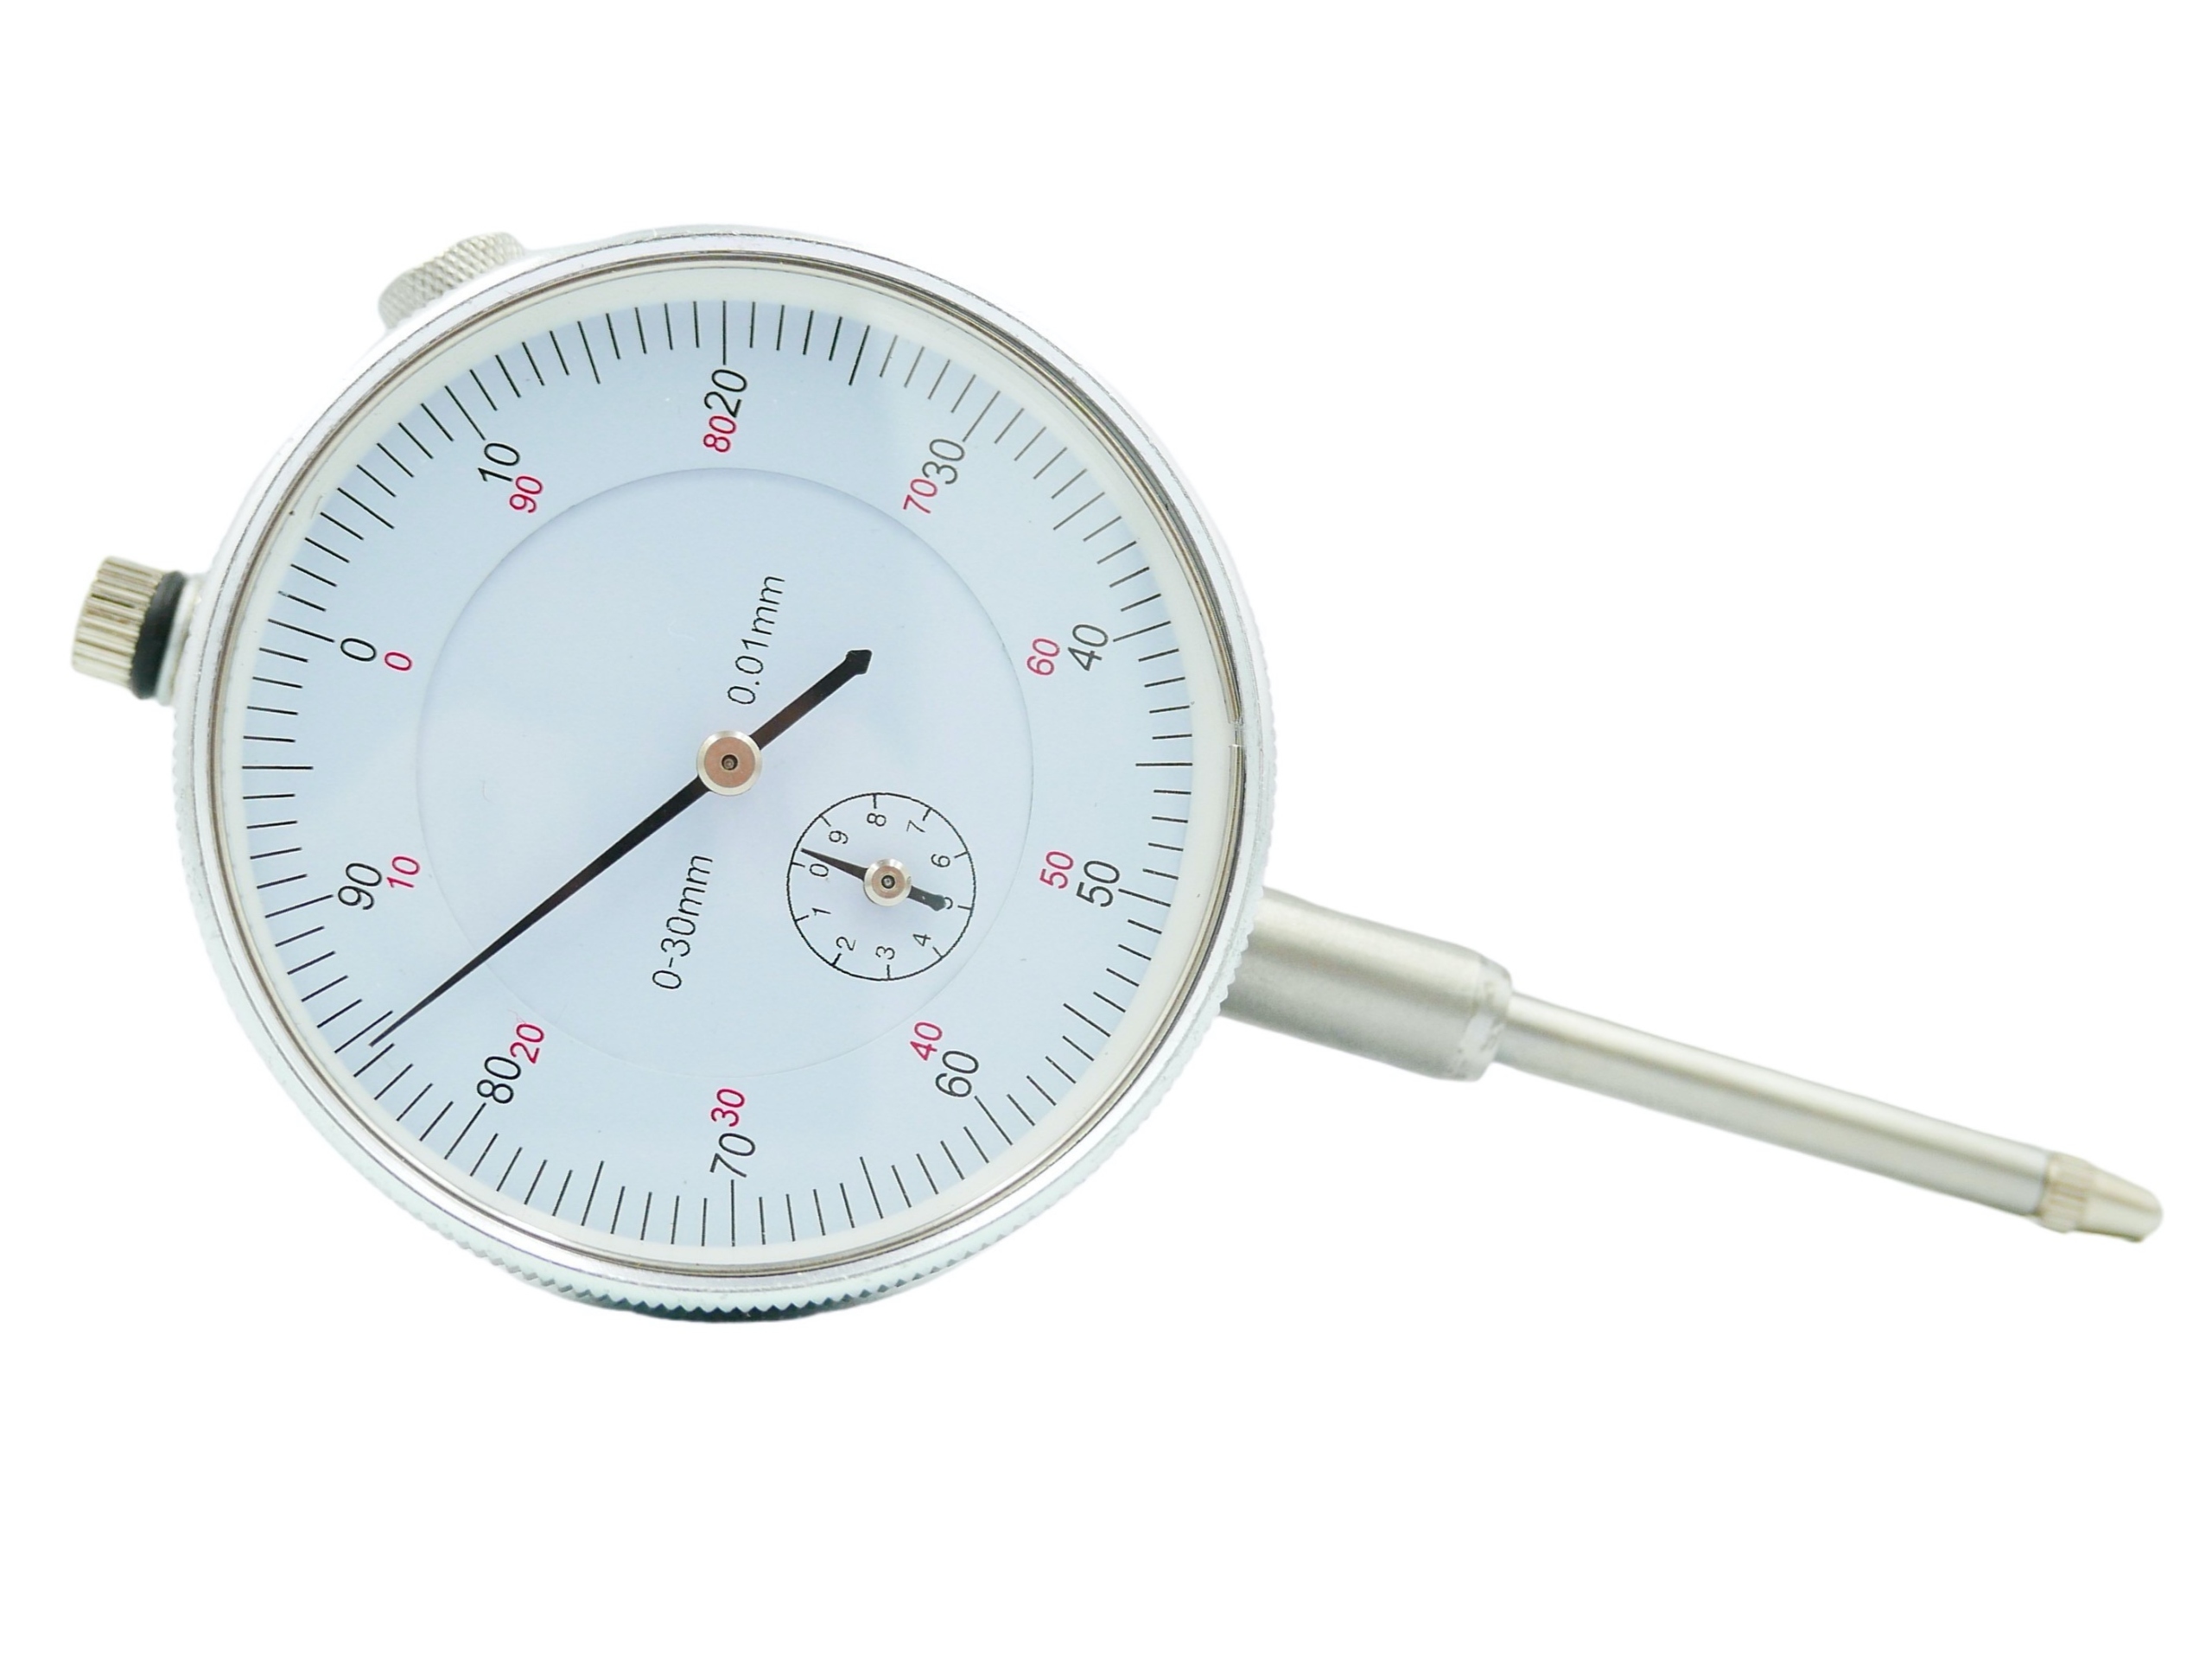 Датчики времени работы. Датчик времени. ДФЧИК времени. Термометр +38 длиной 30см. Индикатор часового типа с магнитной стойкой купить.